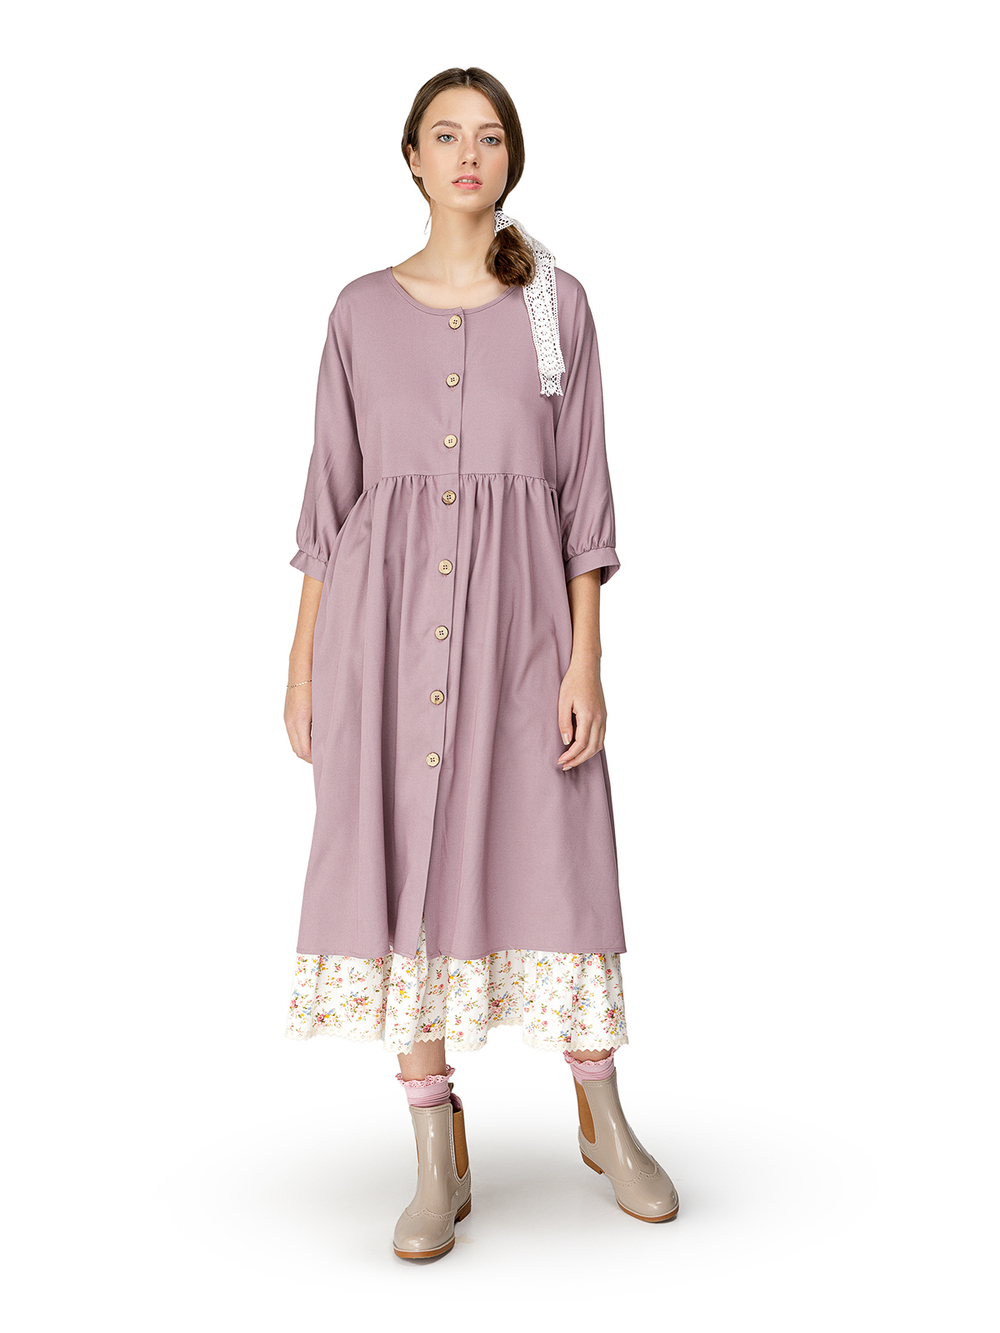 Платье "Нея" свободного кроя на деревянных пуговицах в светло-лиловом цвете